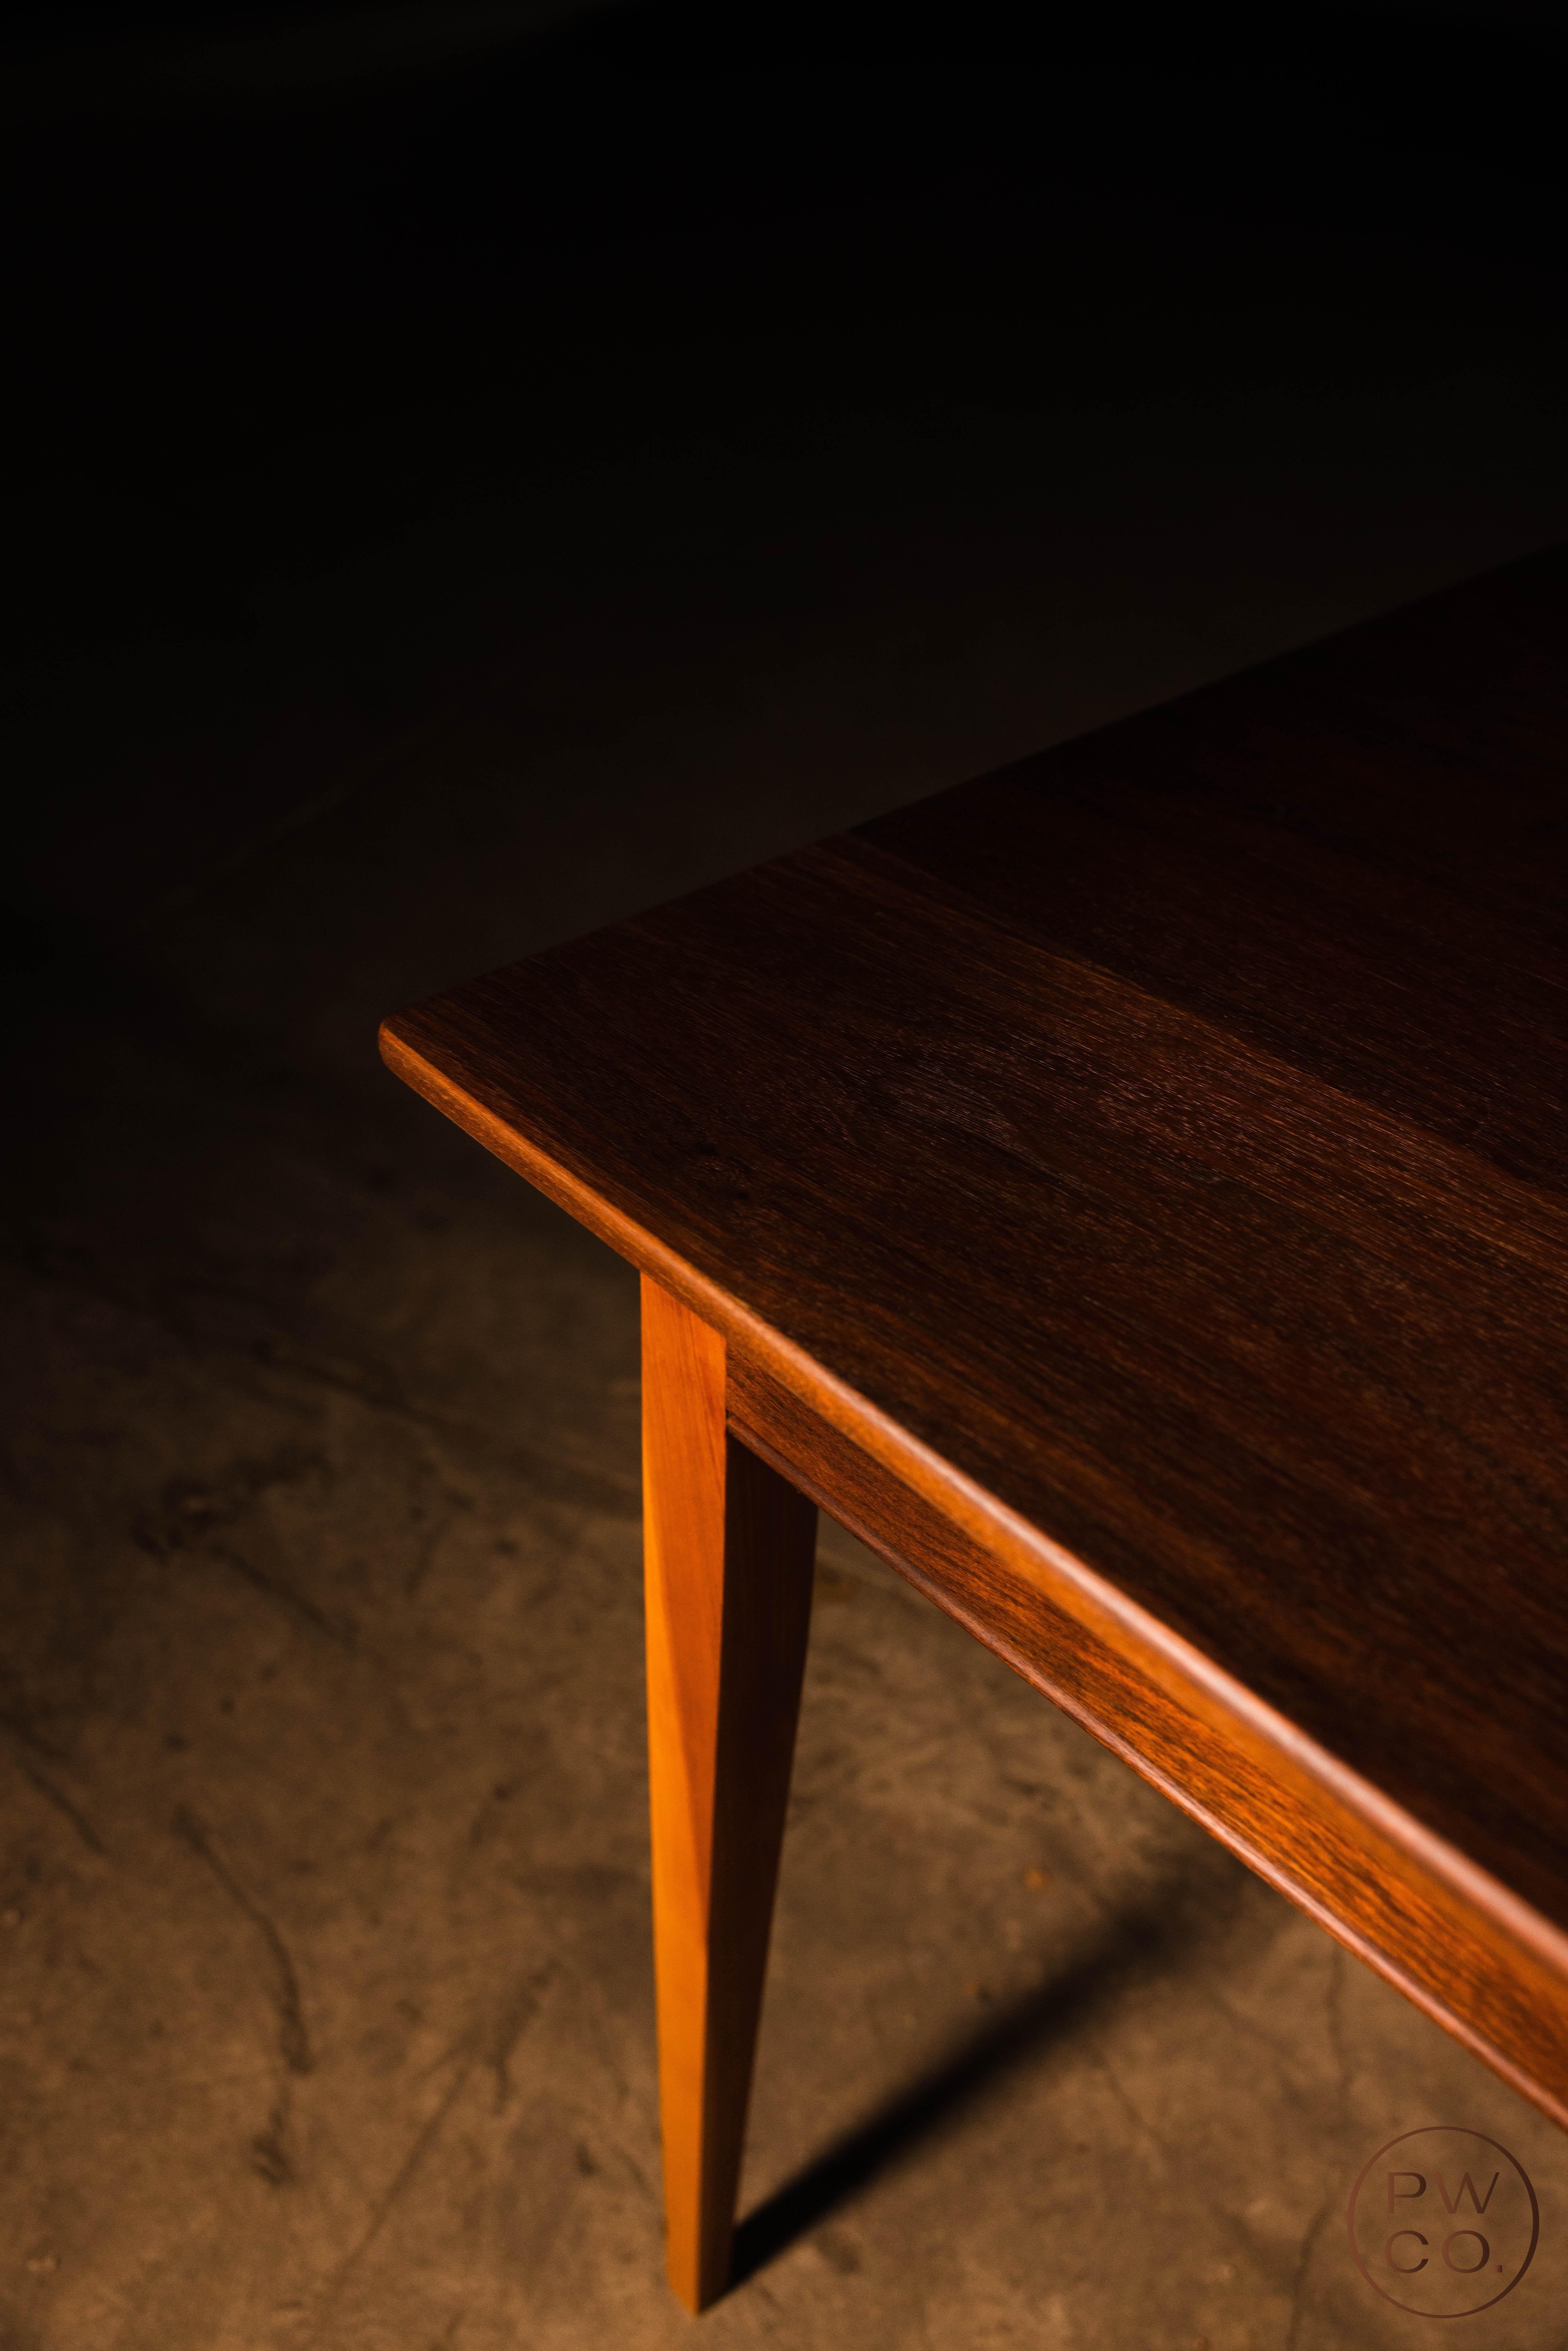 Der Tisch wurde ursprünglich vom Besitzer von Paramount Woodworking vor 14 Jahren gebaut und wurde kürzlich vollständig restauriert, um besser als je zuvor zu sein. Es ist zu einem fantastischen Preis erhältlich!

Abmessungen: 31